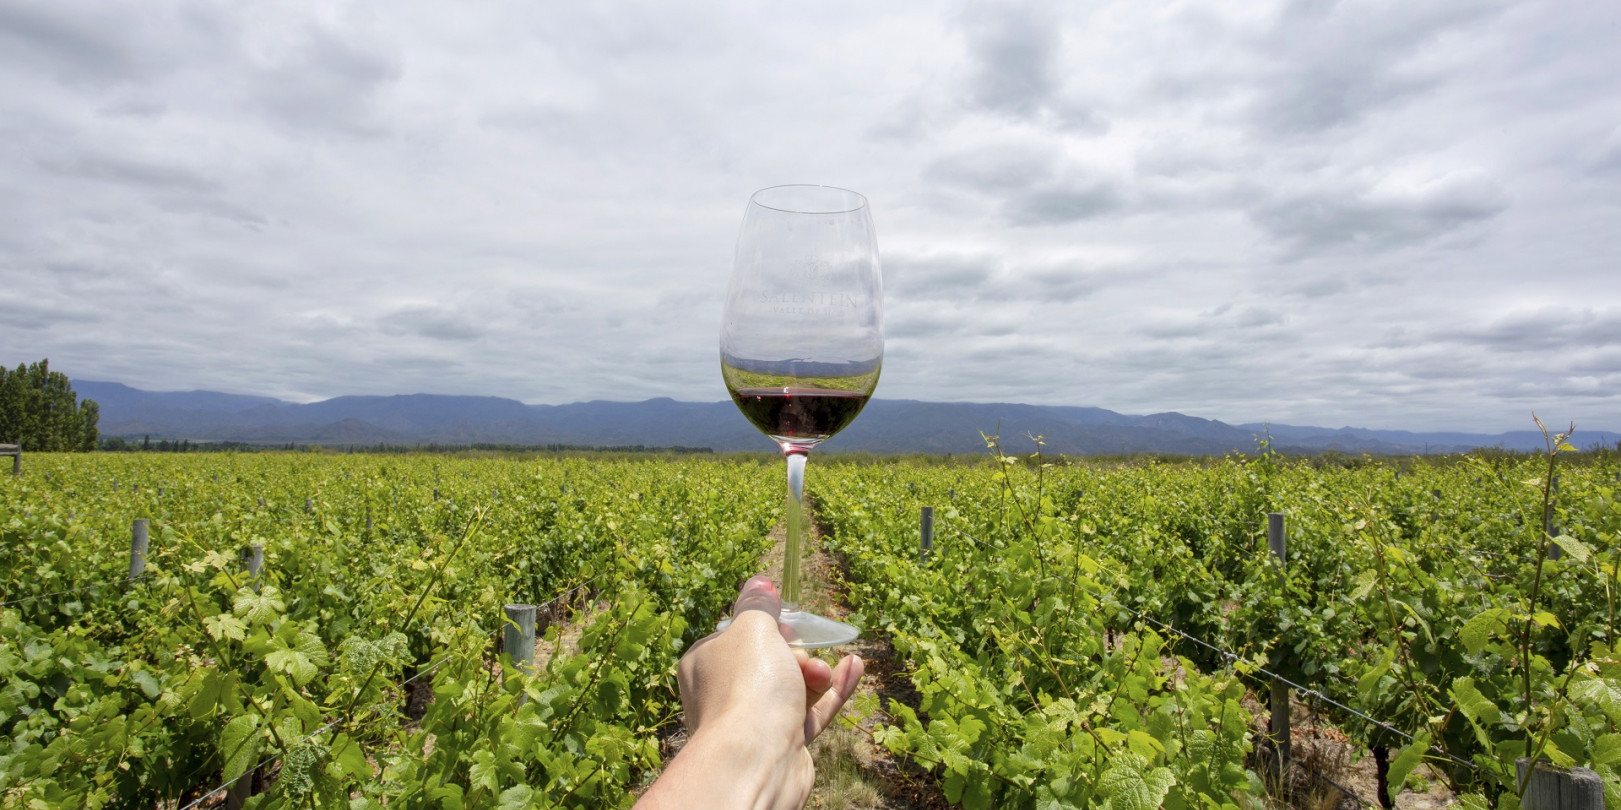 La Argentina participará de una exhibición vitivinícola en Francia